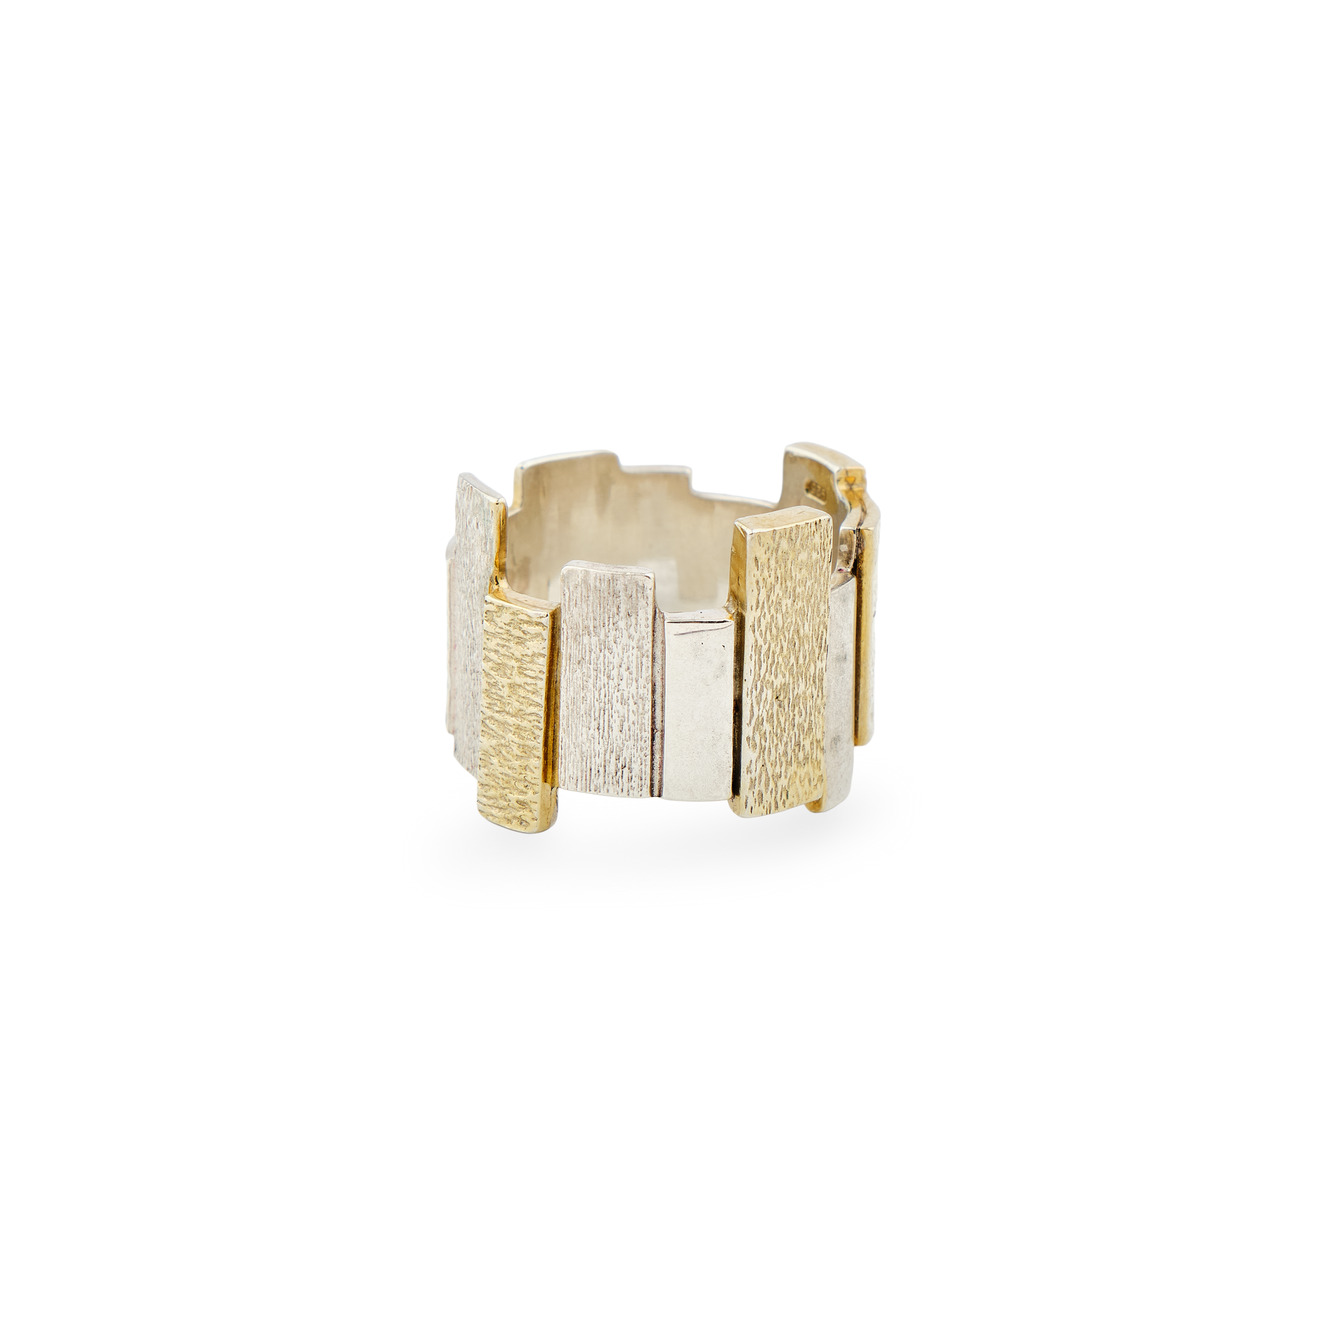 УРА jewelry Биколорное фактурное кольцо-город из серебра